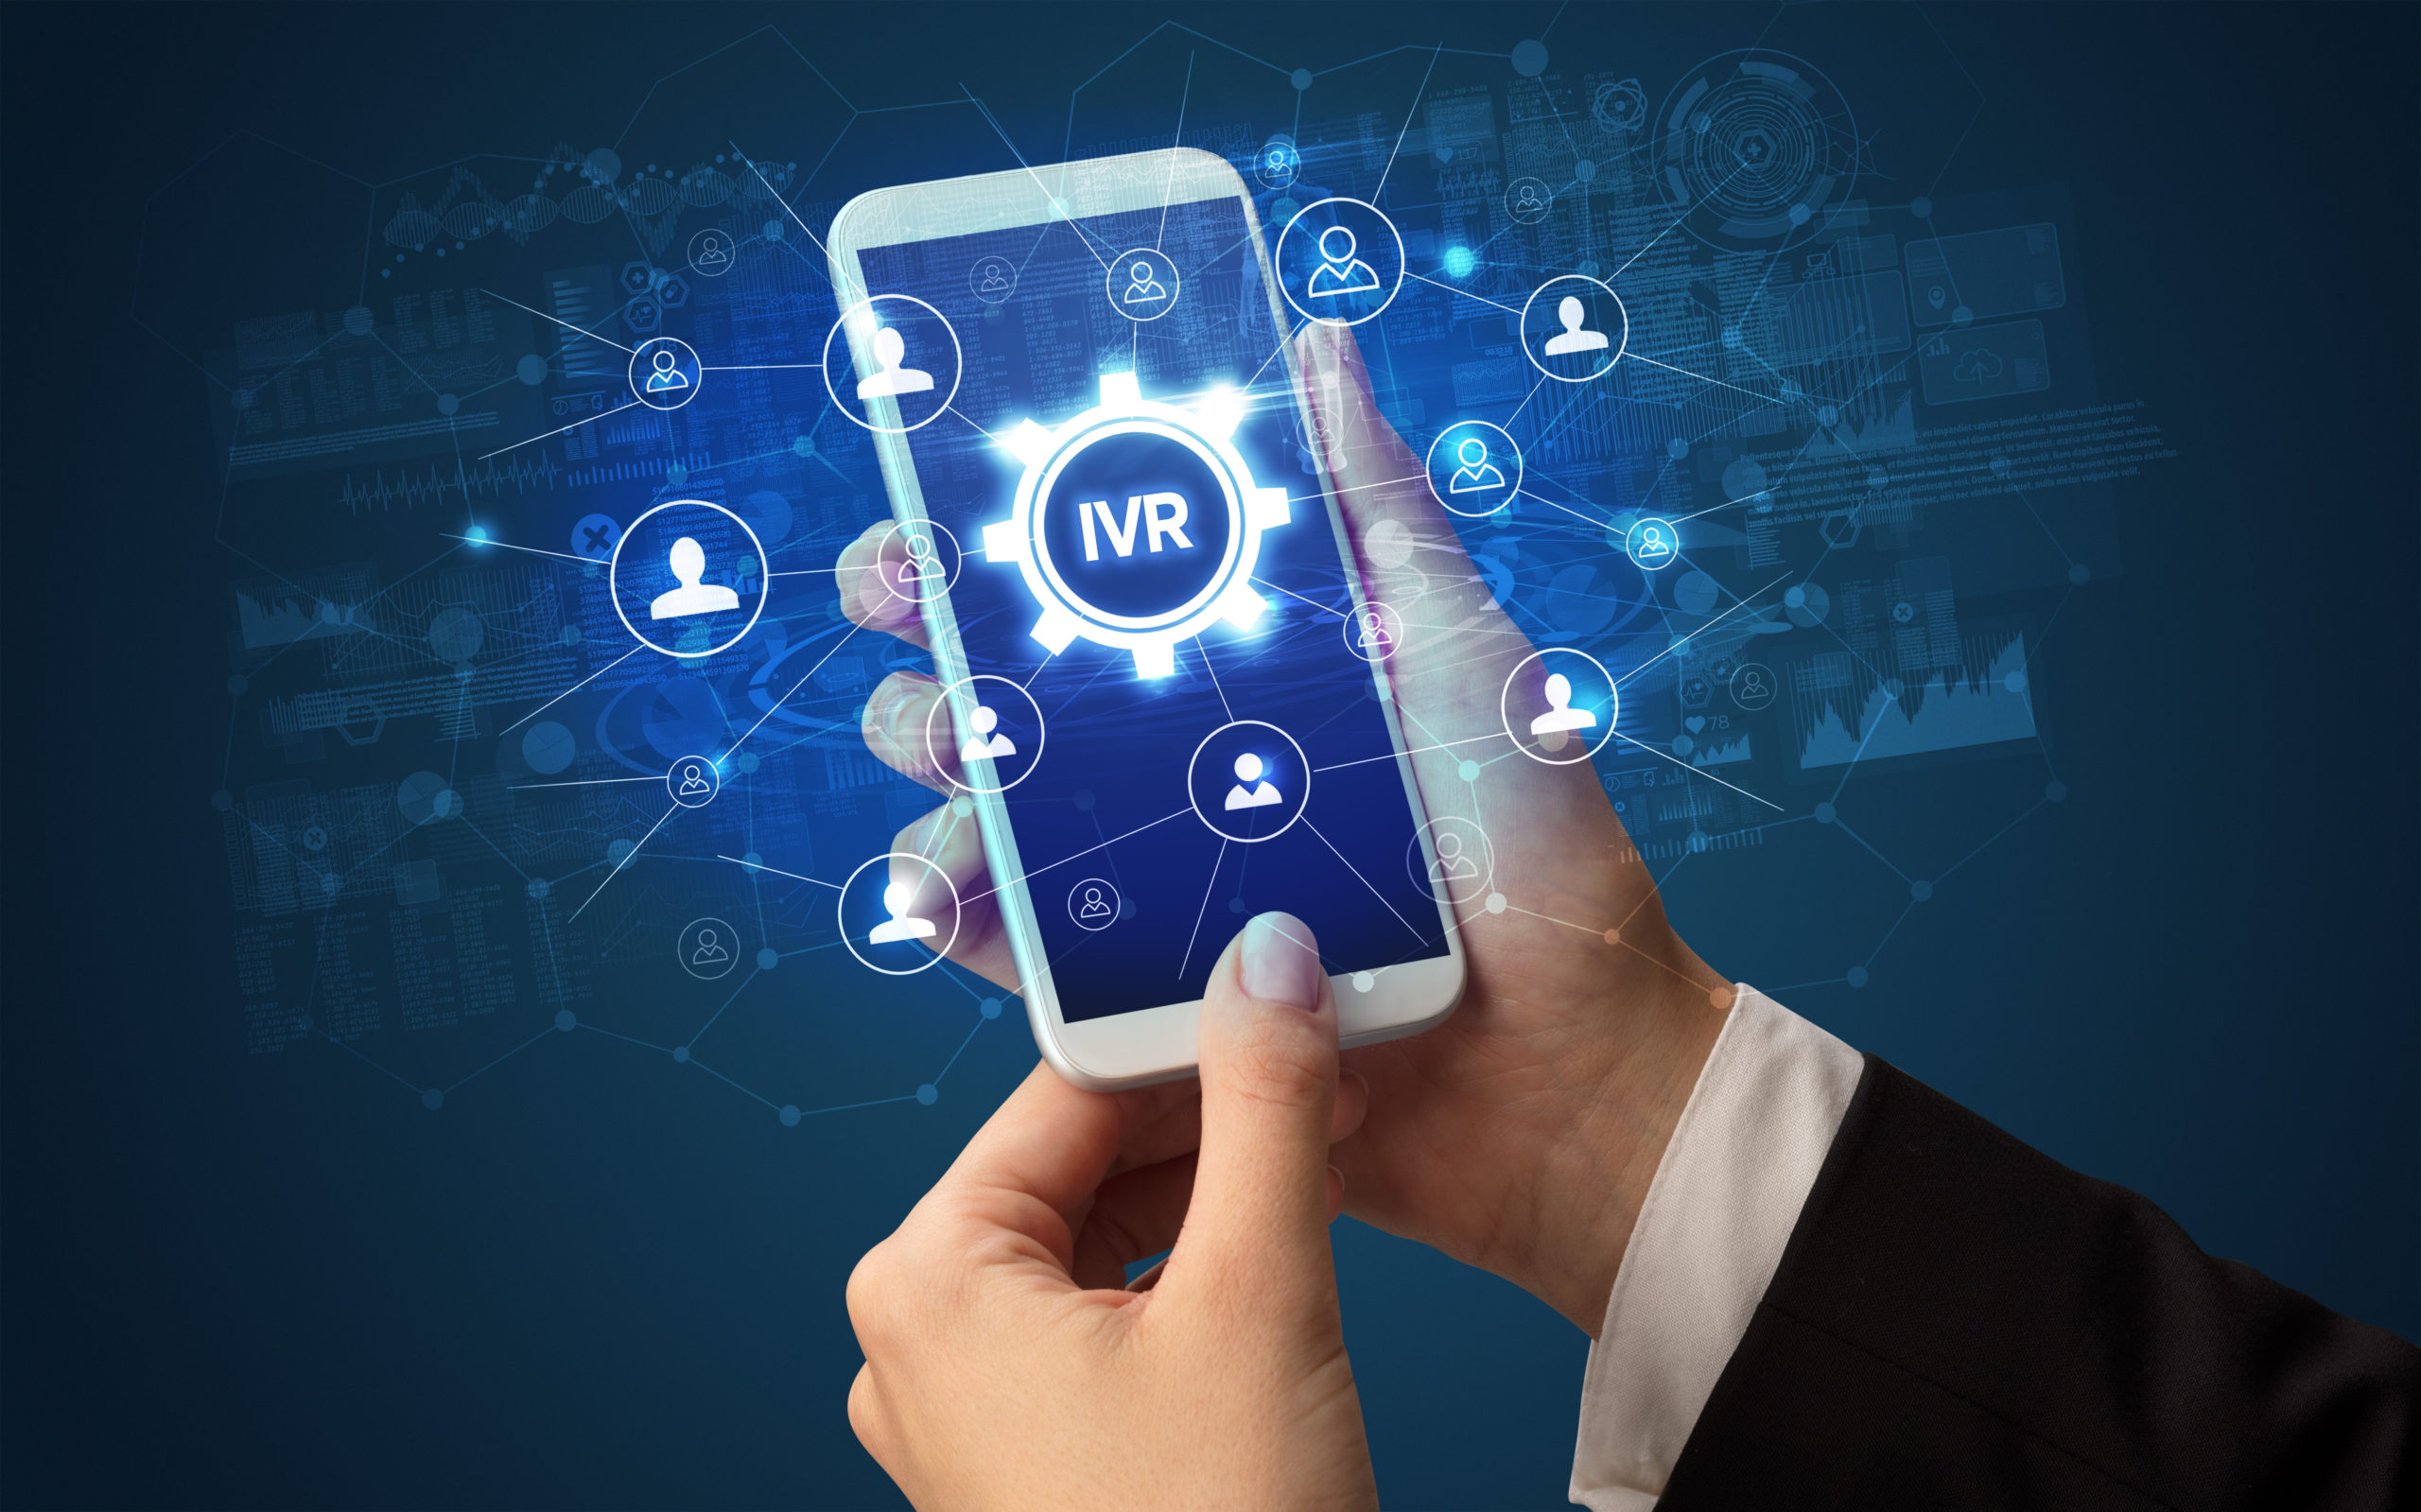 IVR – Hệ thống tương tác thoại tự động